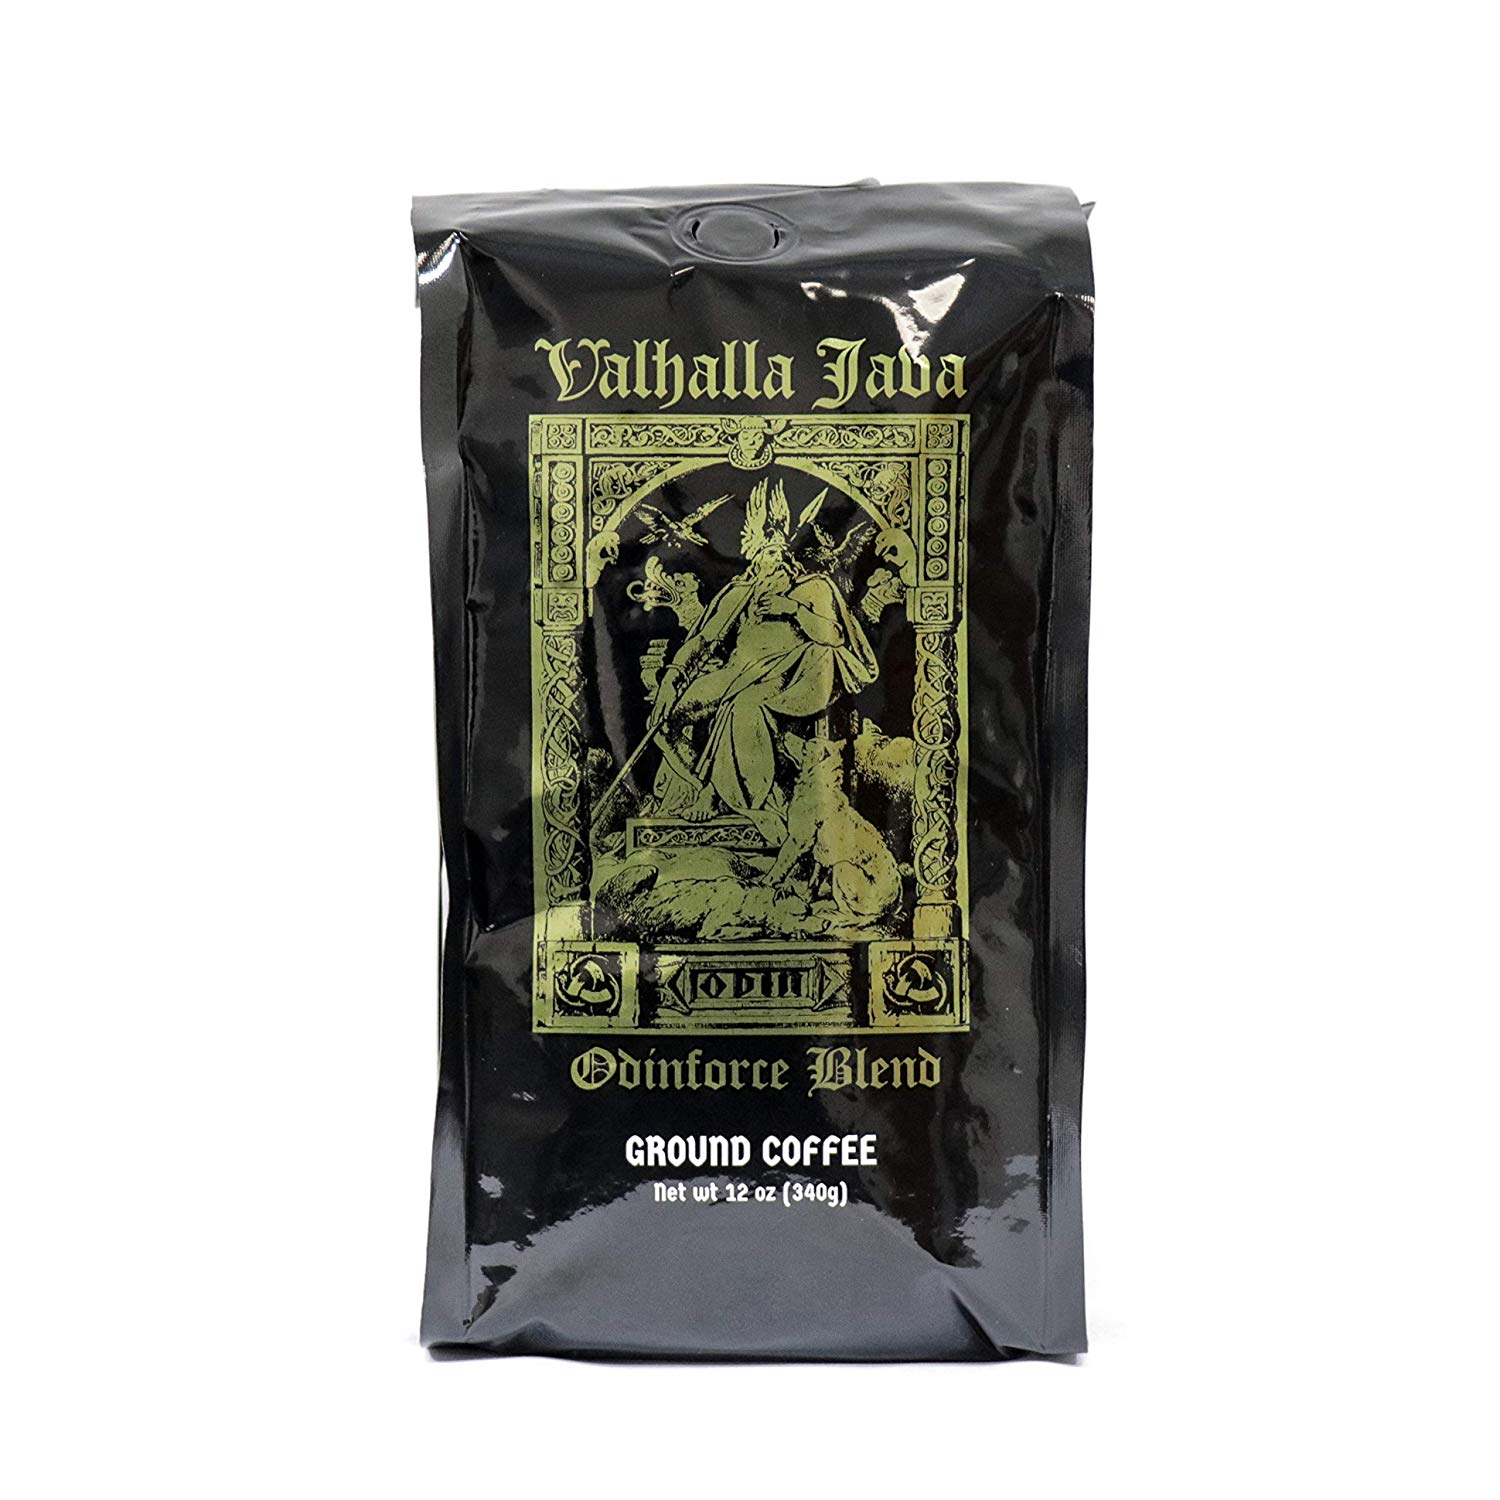 Valhalla Java Ground Coffee